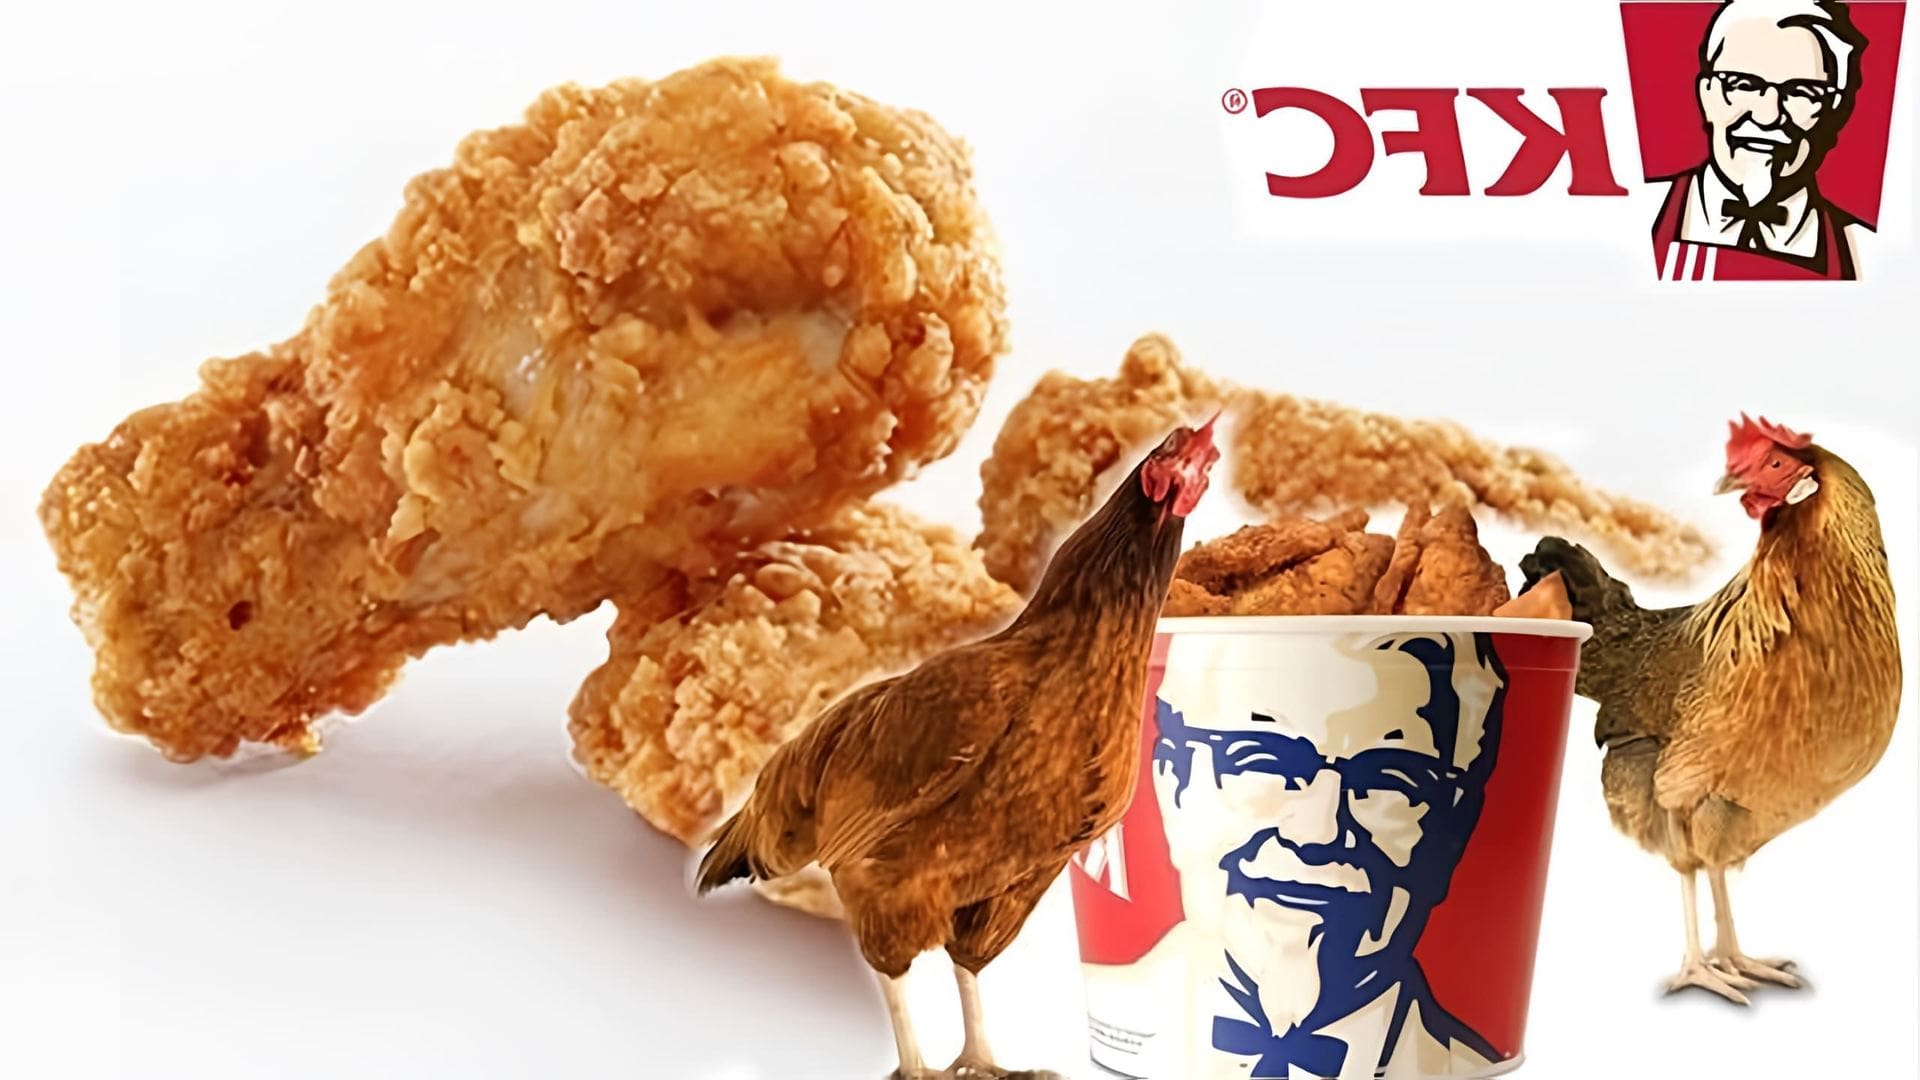 В этом видео демонстрируется рецепт приготовления куриных крылышек KFC, который можно приготовить в домашних условиях